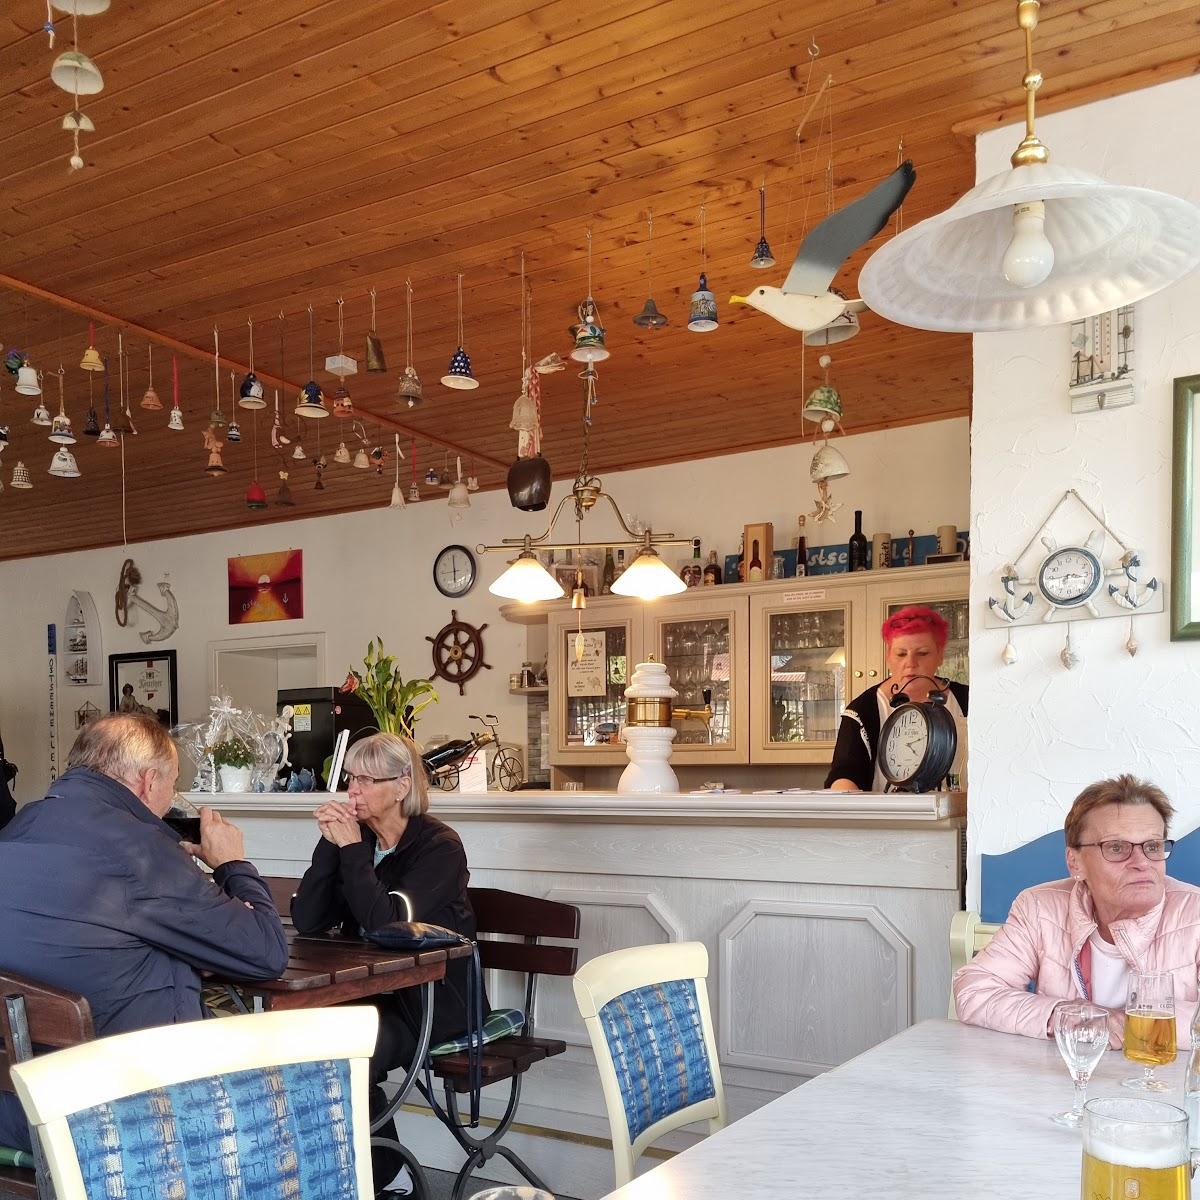 Restaurant "Zur Ostseewelle" in Kühlungsborn